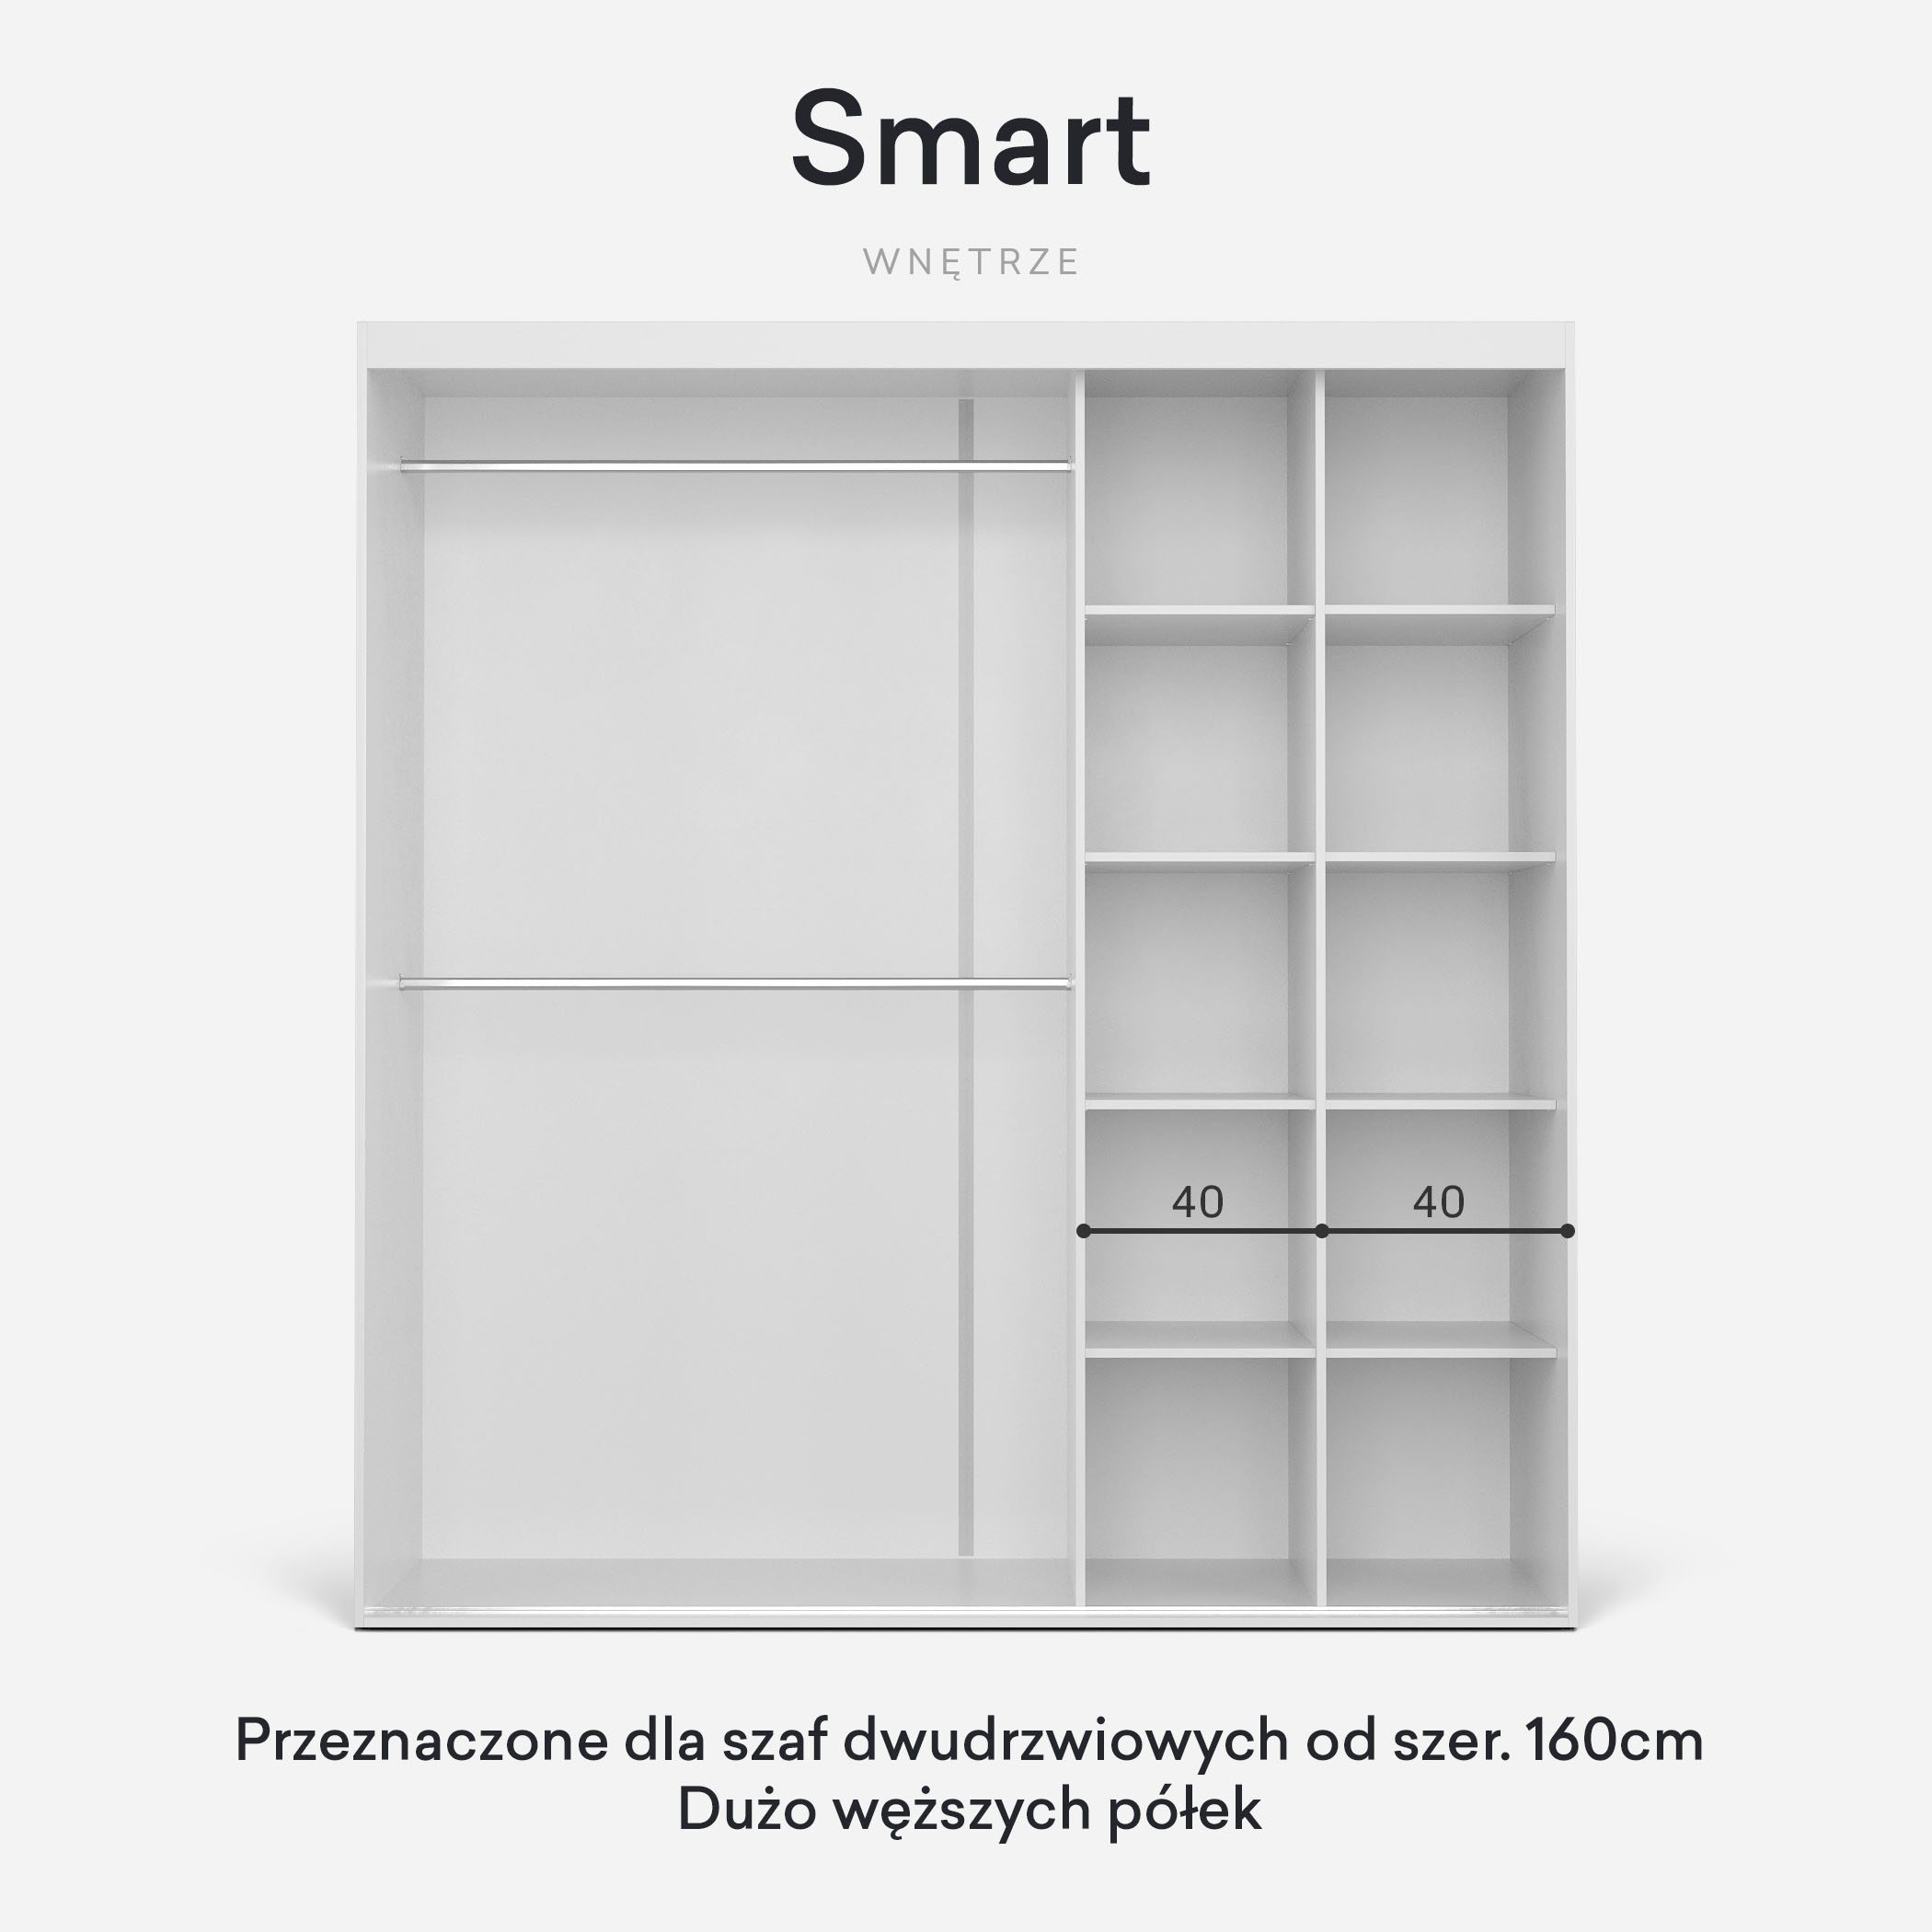 Smart – 8 węższych półek oraz 2 drążki